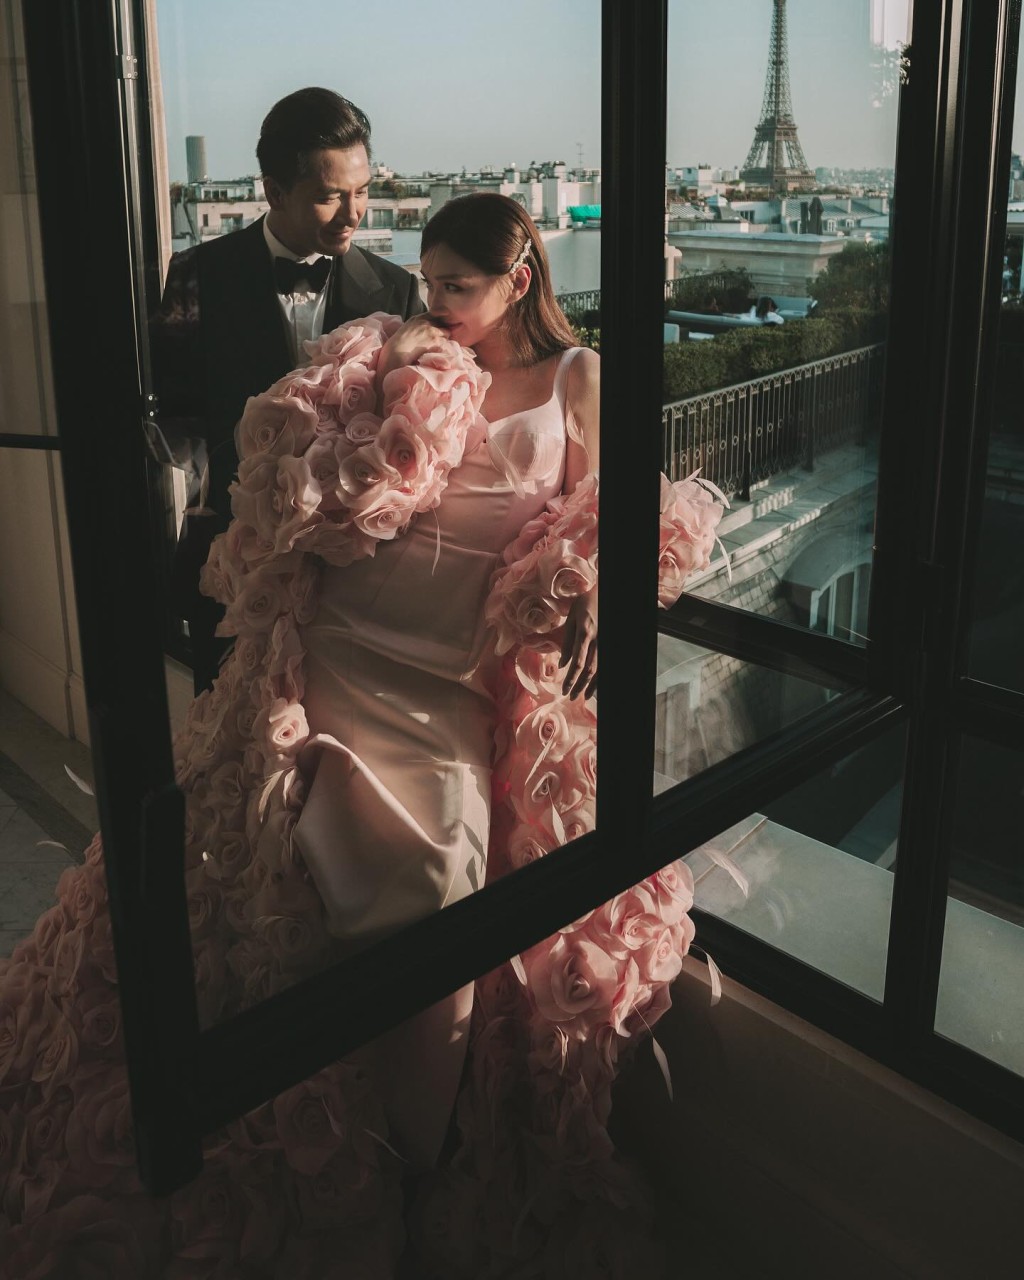 馬國明與湯洛雯分享在巴黎拍攝的婚照。